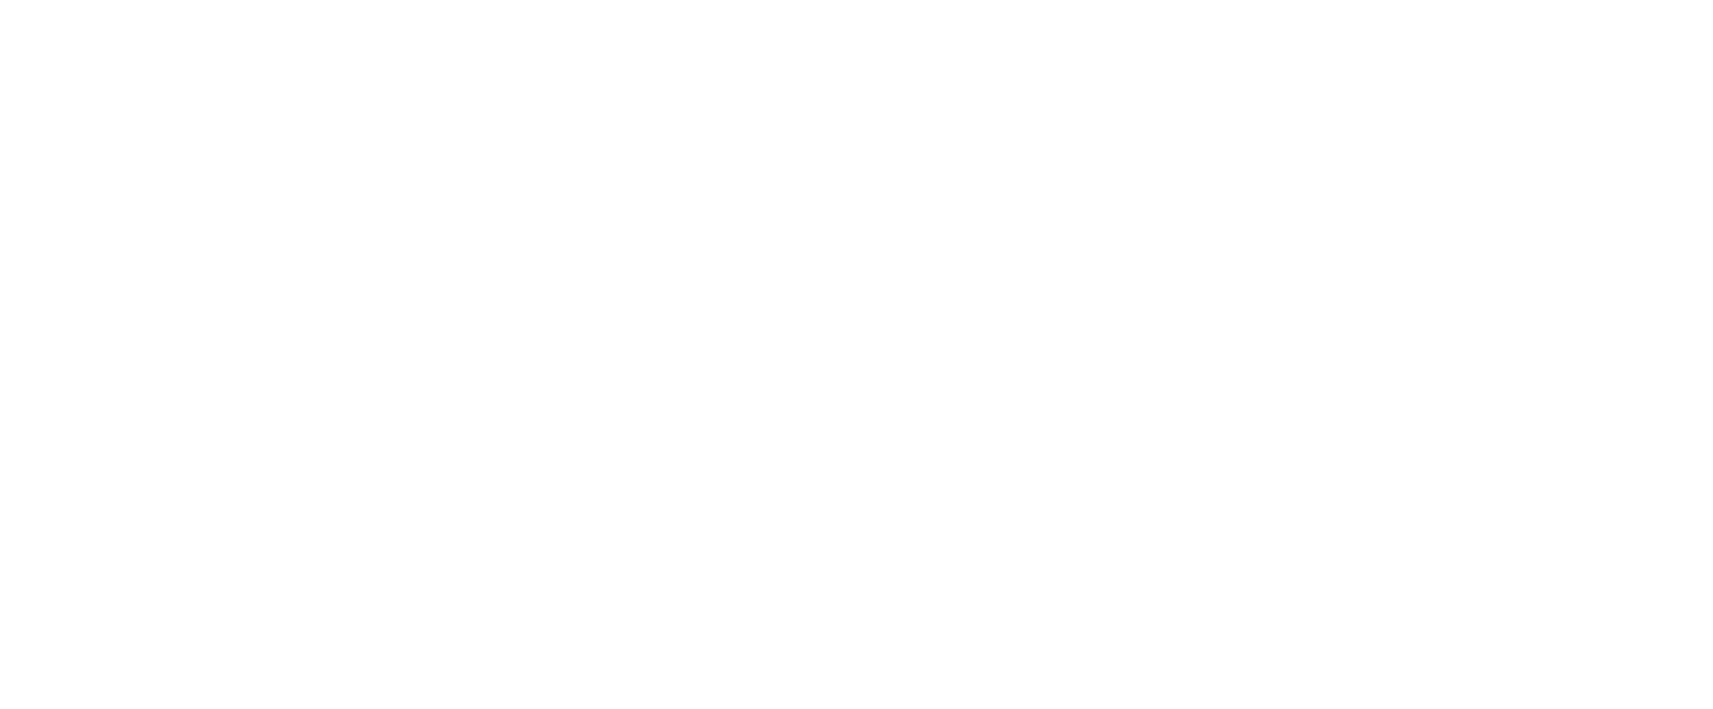 Vuxxx der Pillen-Spezialist Logo